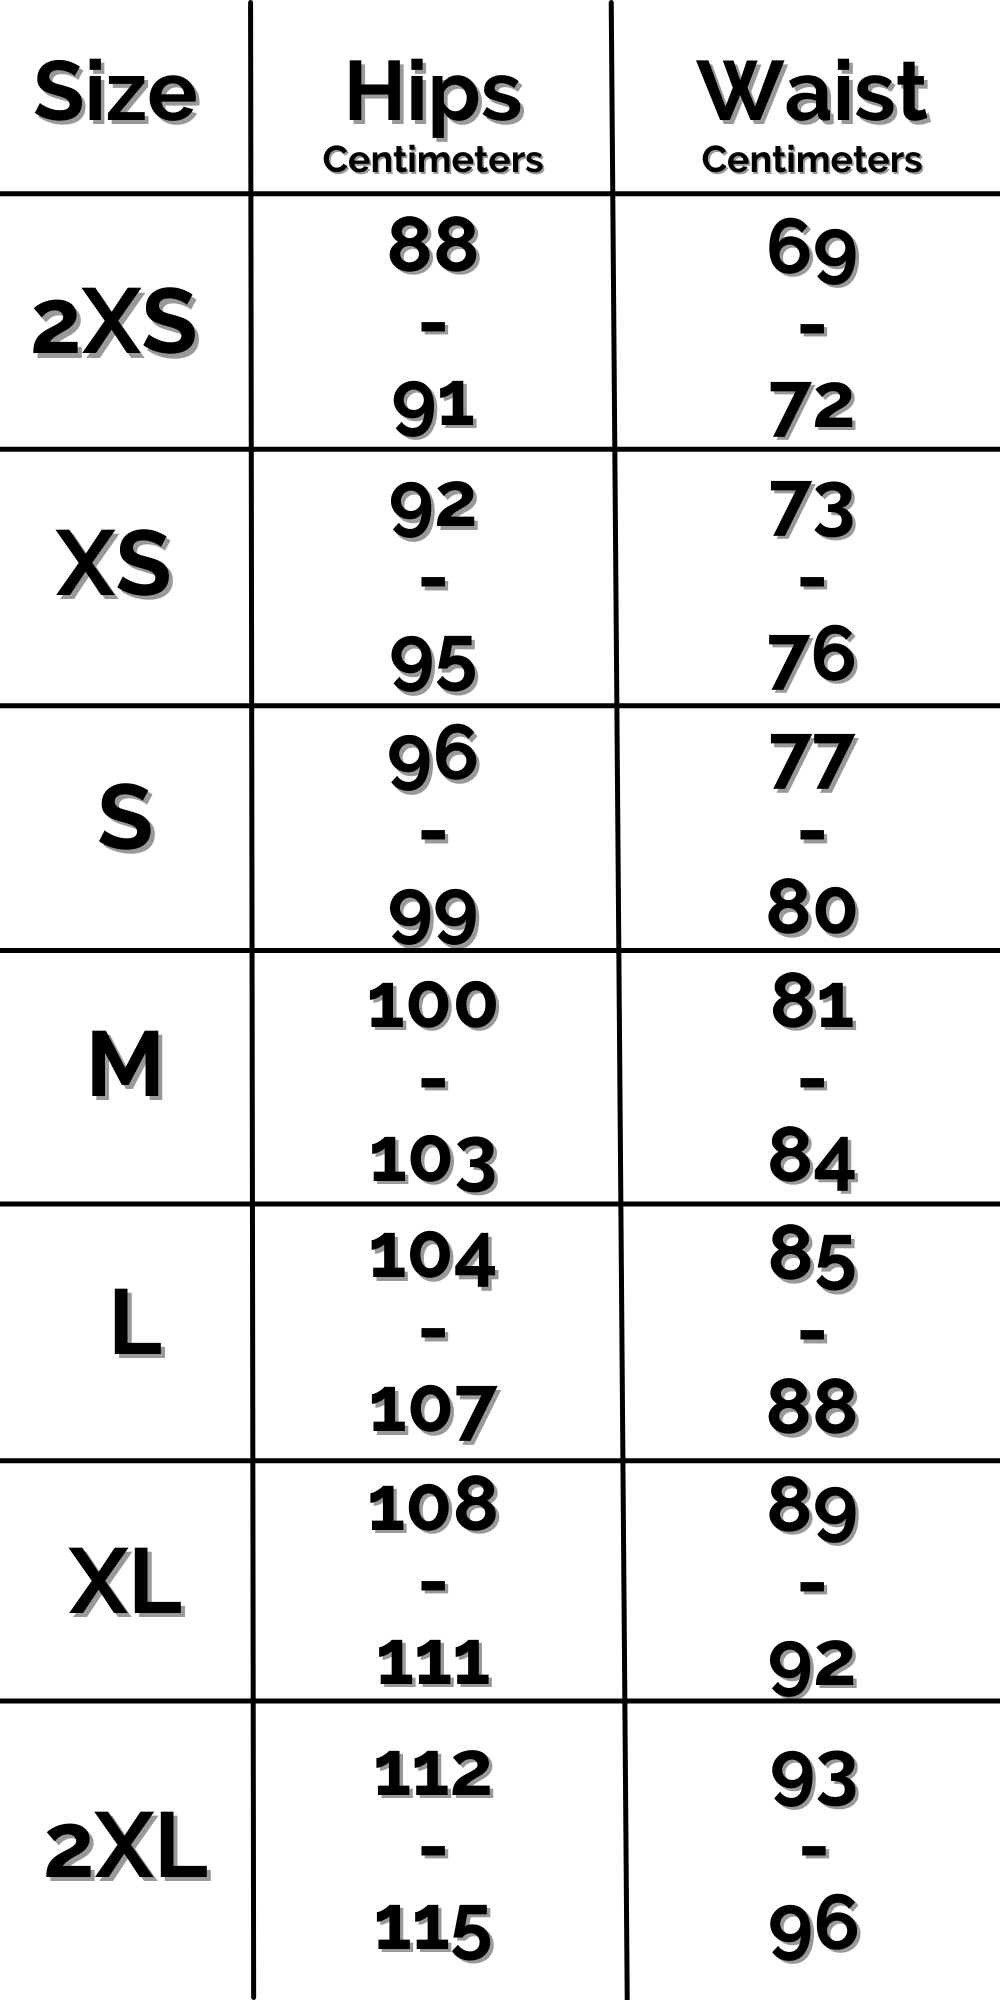 INTL Sweatshorts Size Chart